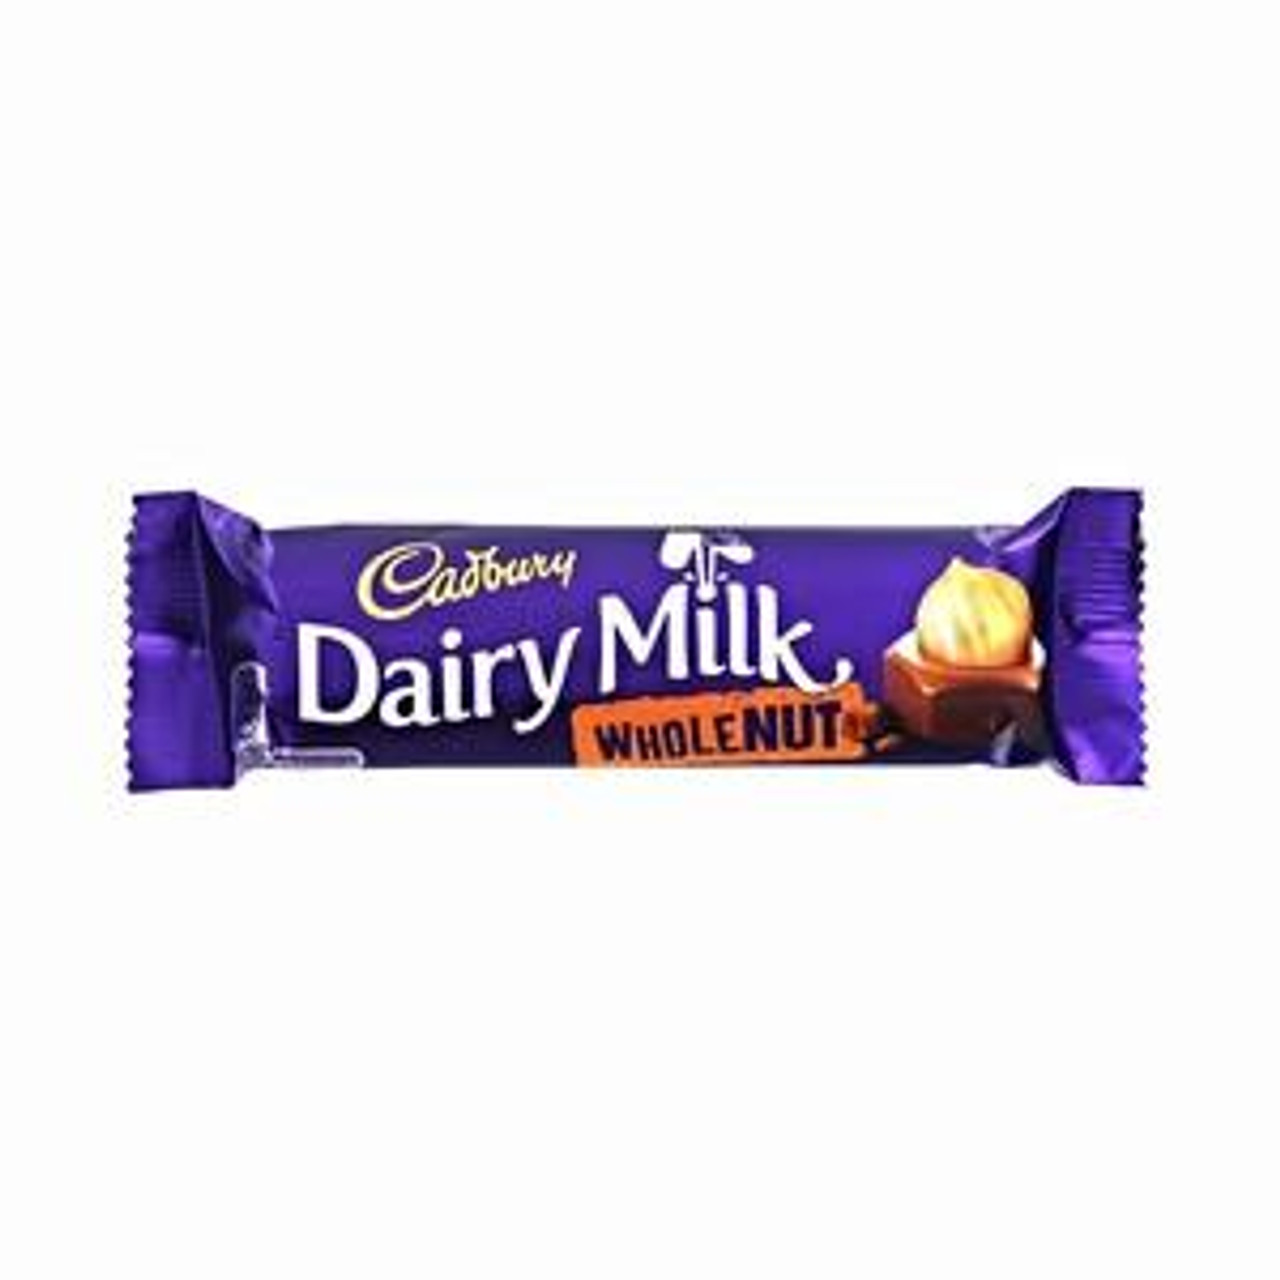 Cadbury - Dairy Milk Whole Nut, 45g